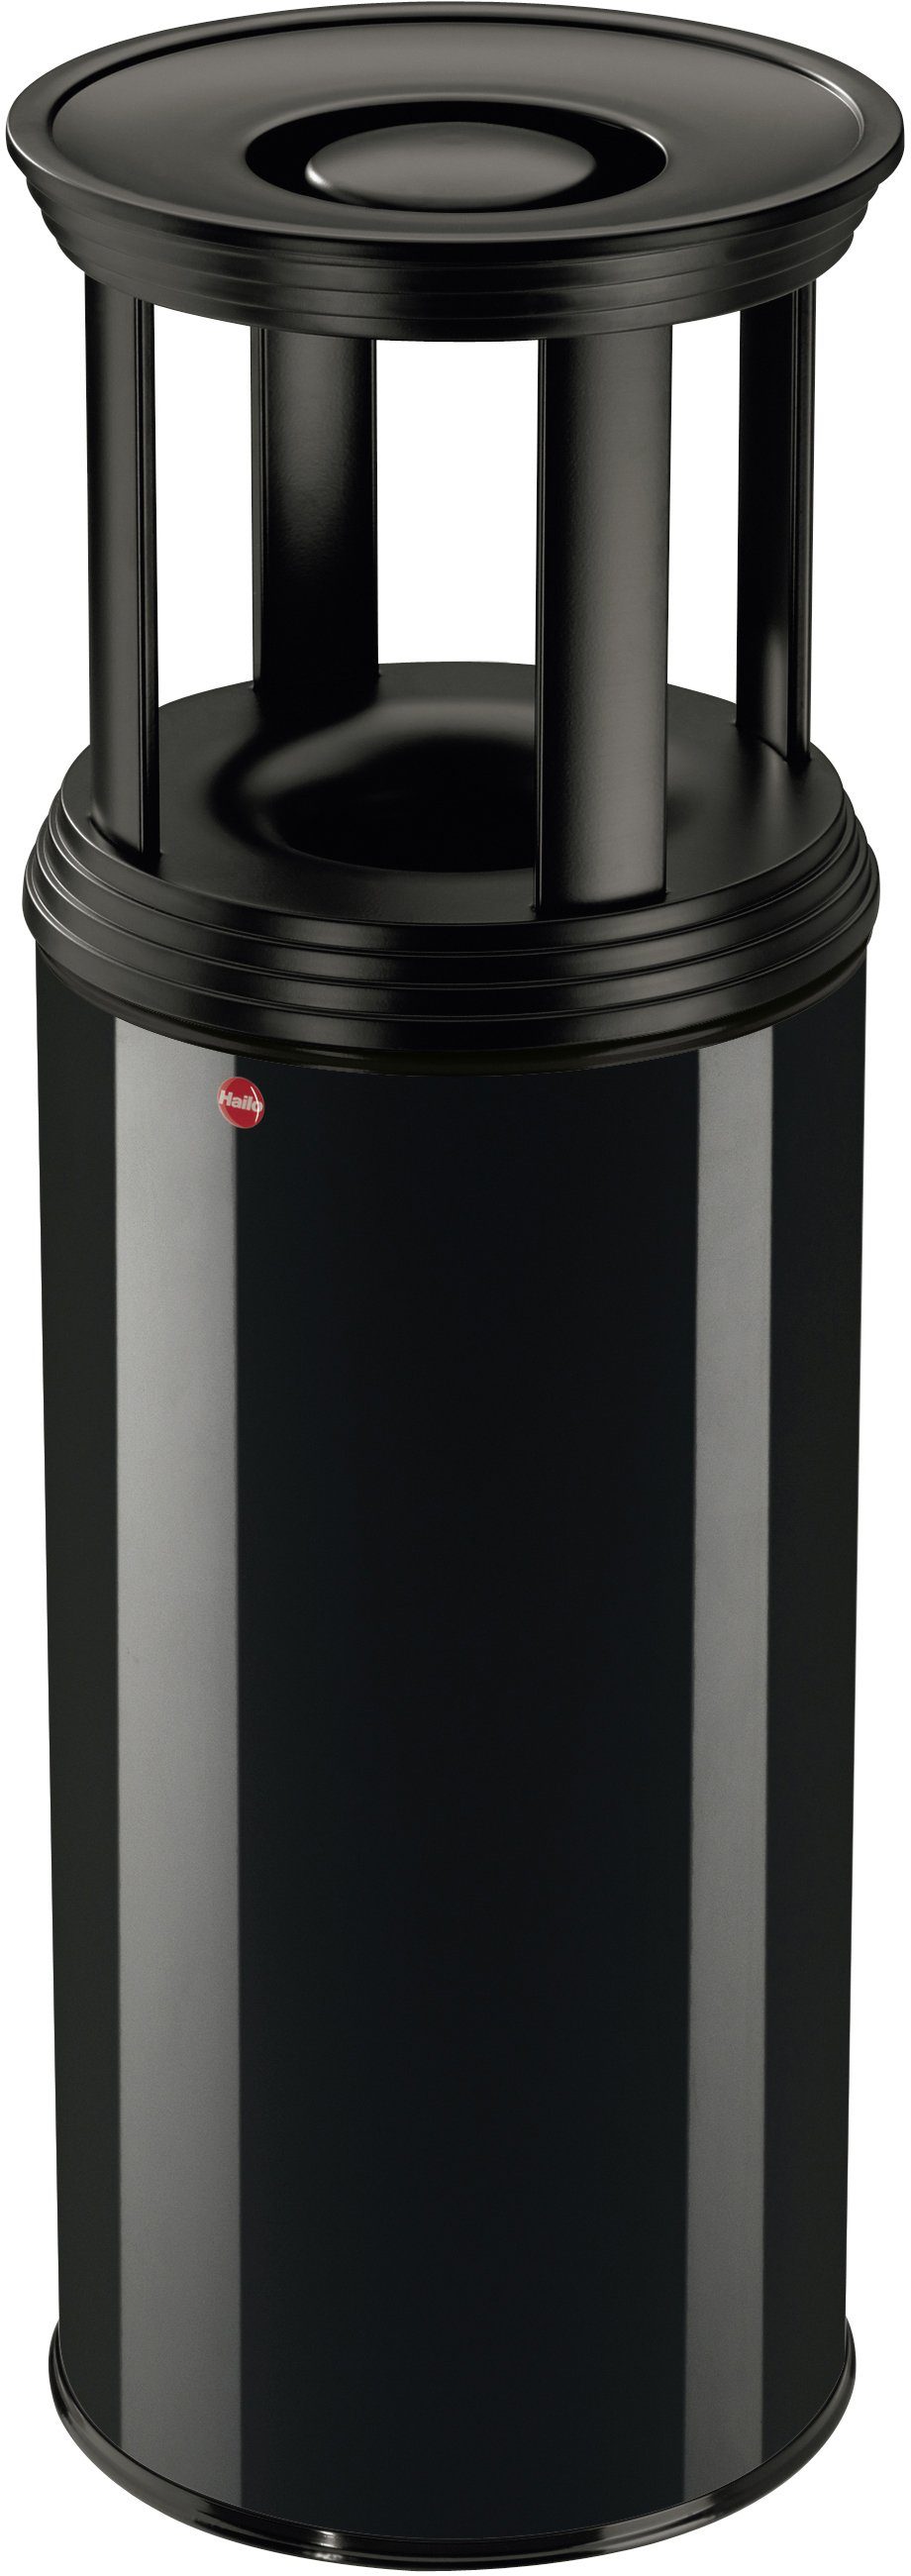 Hailo Aschenbecher ProfiLine Safe Plus XL, 45 Liter, Stahlblech, flammenlöschender Papierkorb mit Ascherschale schwarz